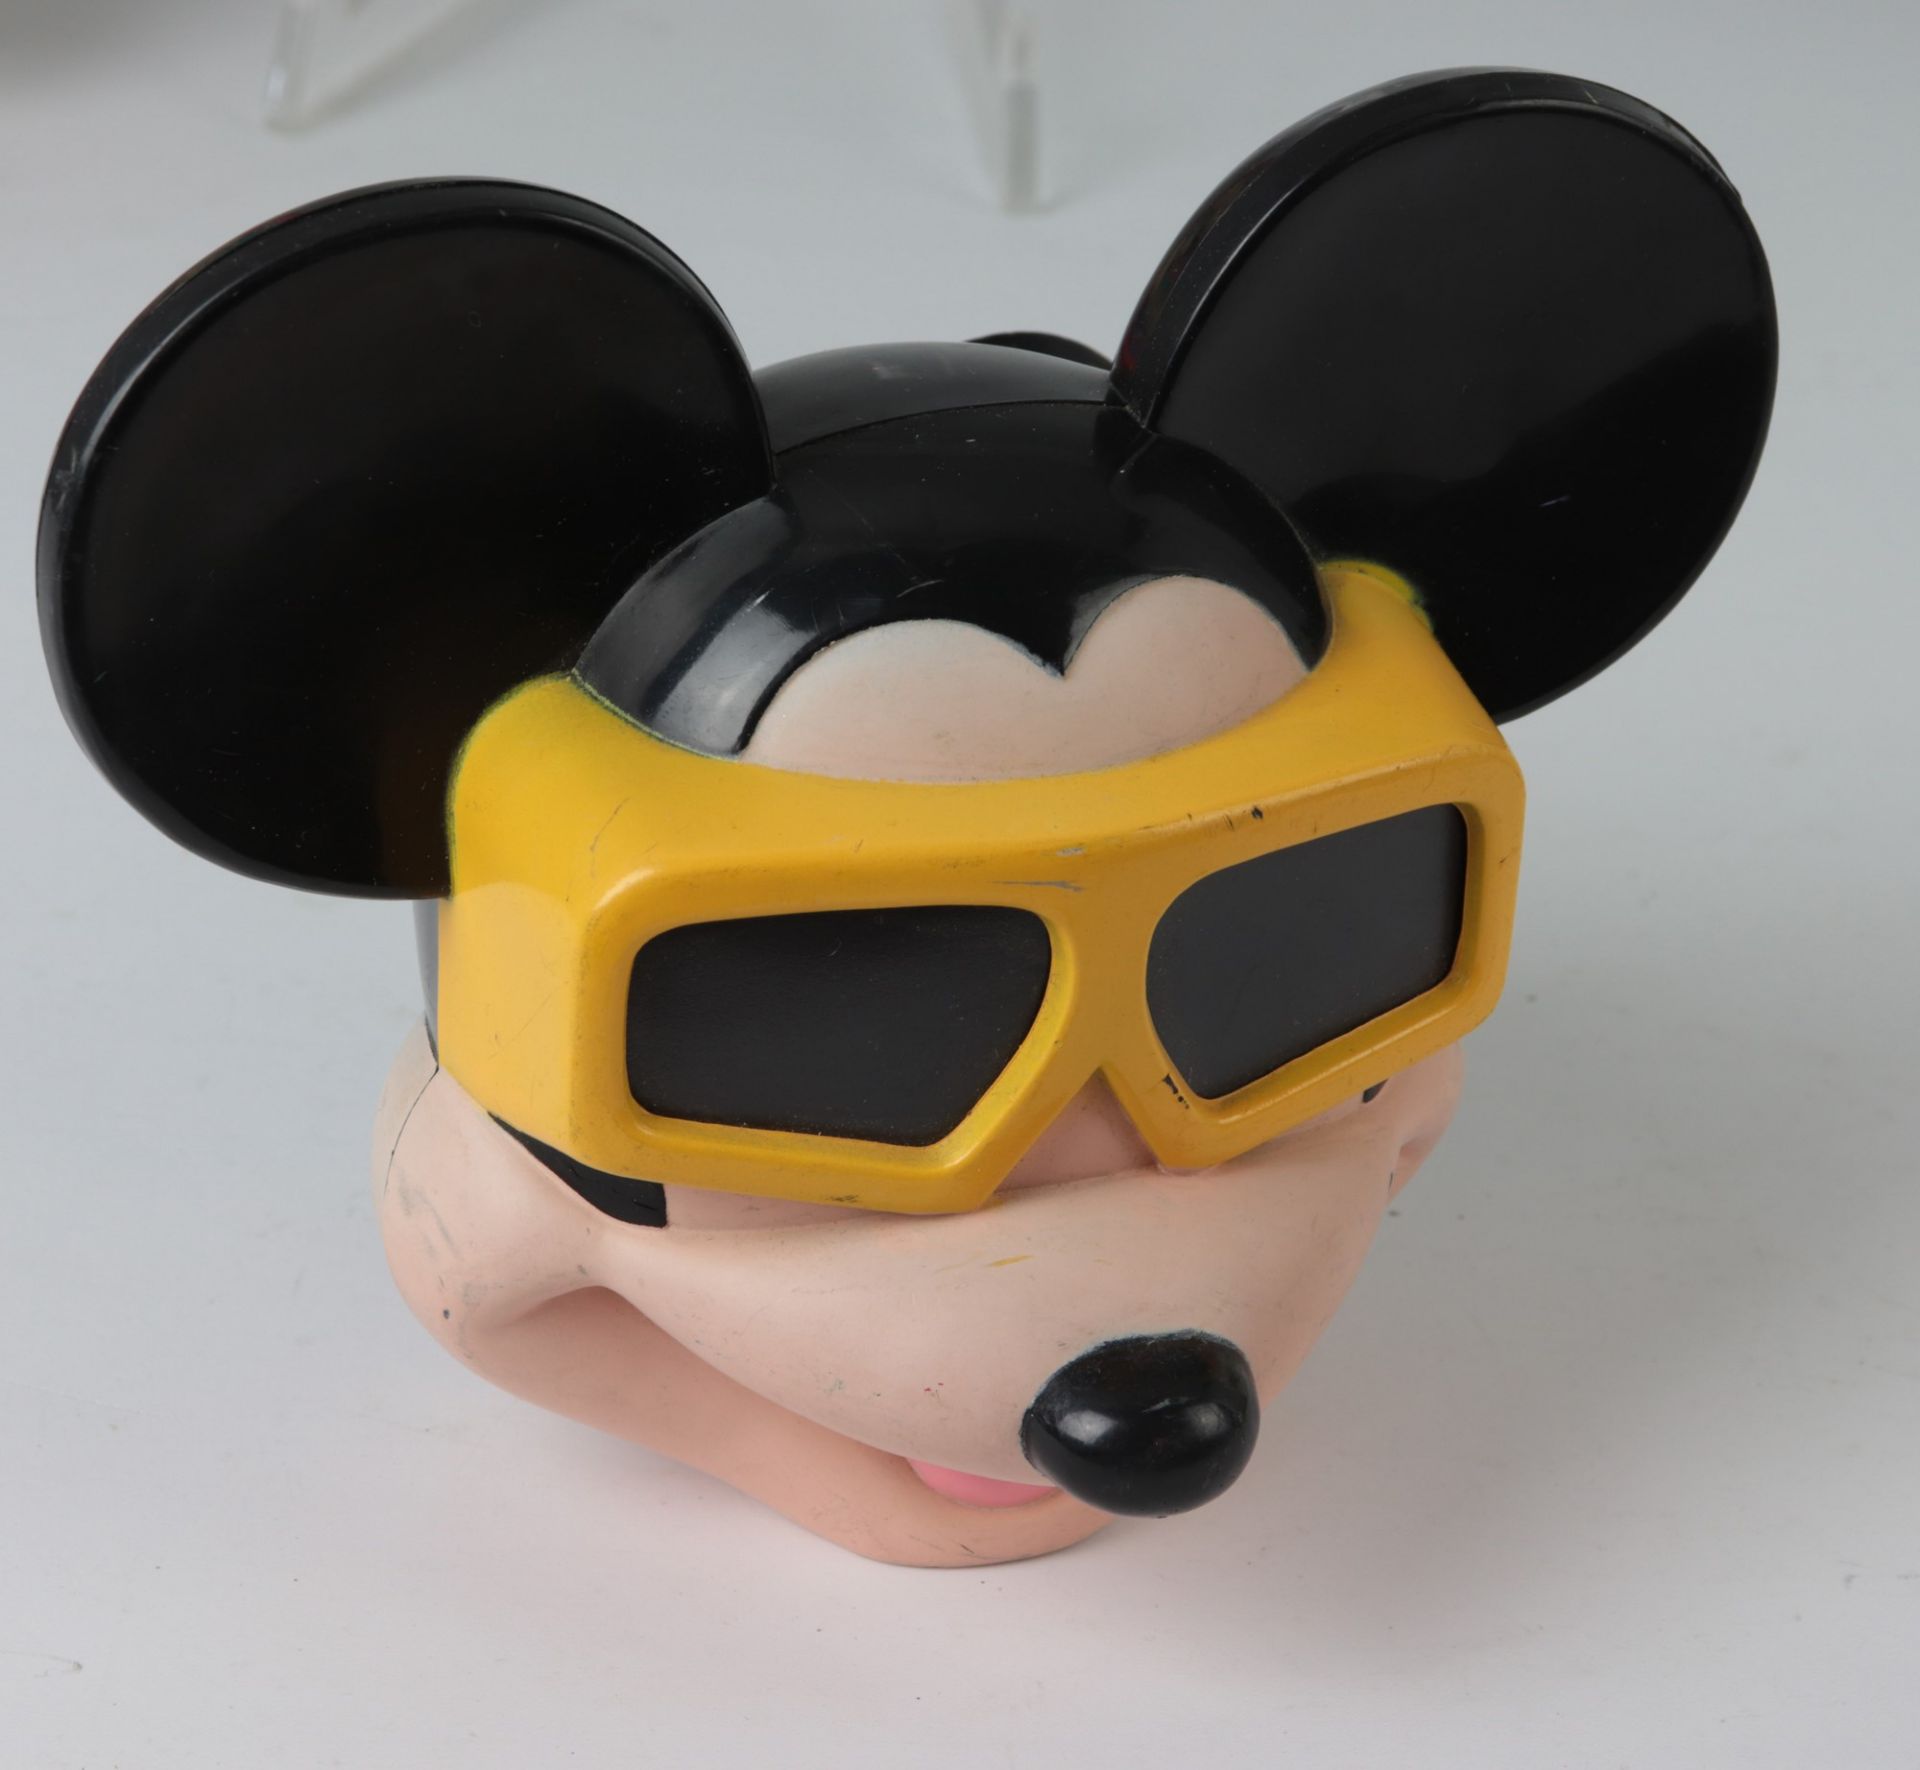 Mickey Mouse - Sammlung 20. Jh., 16 Teile, vielfältige Sammlung aus versch. Materialien u. - Image 6 of 9